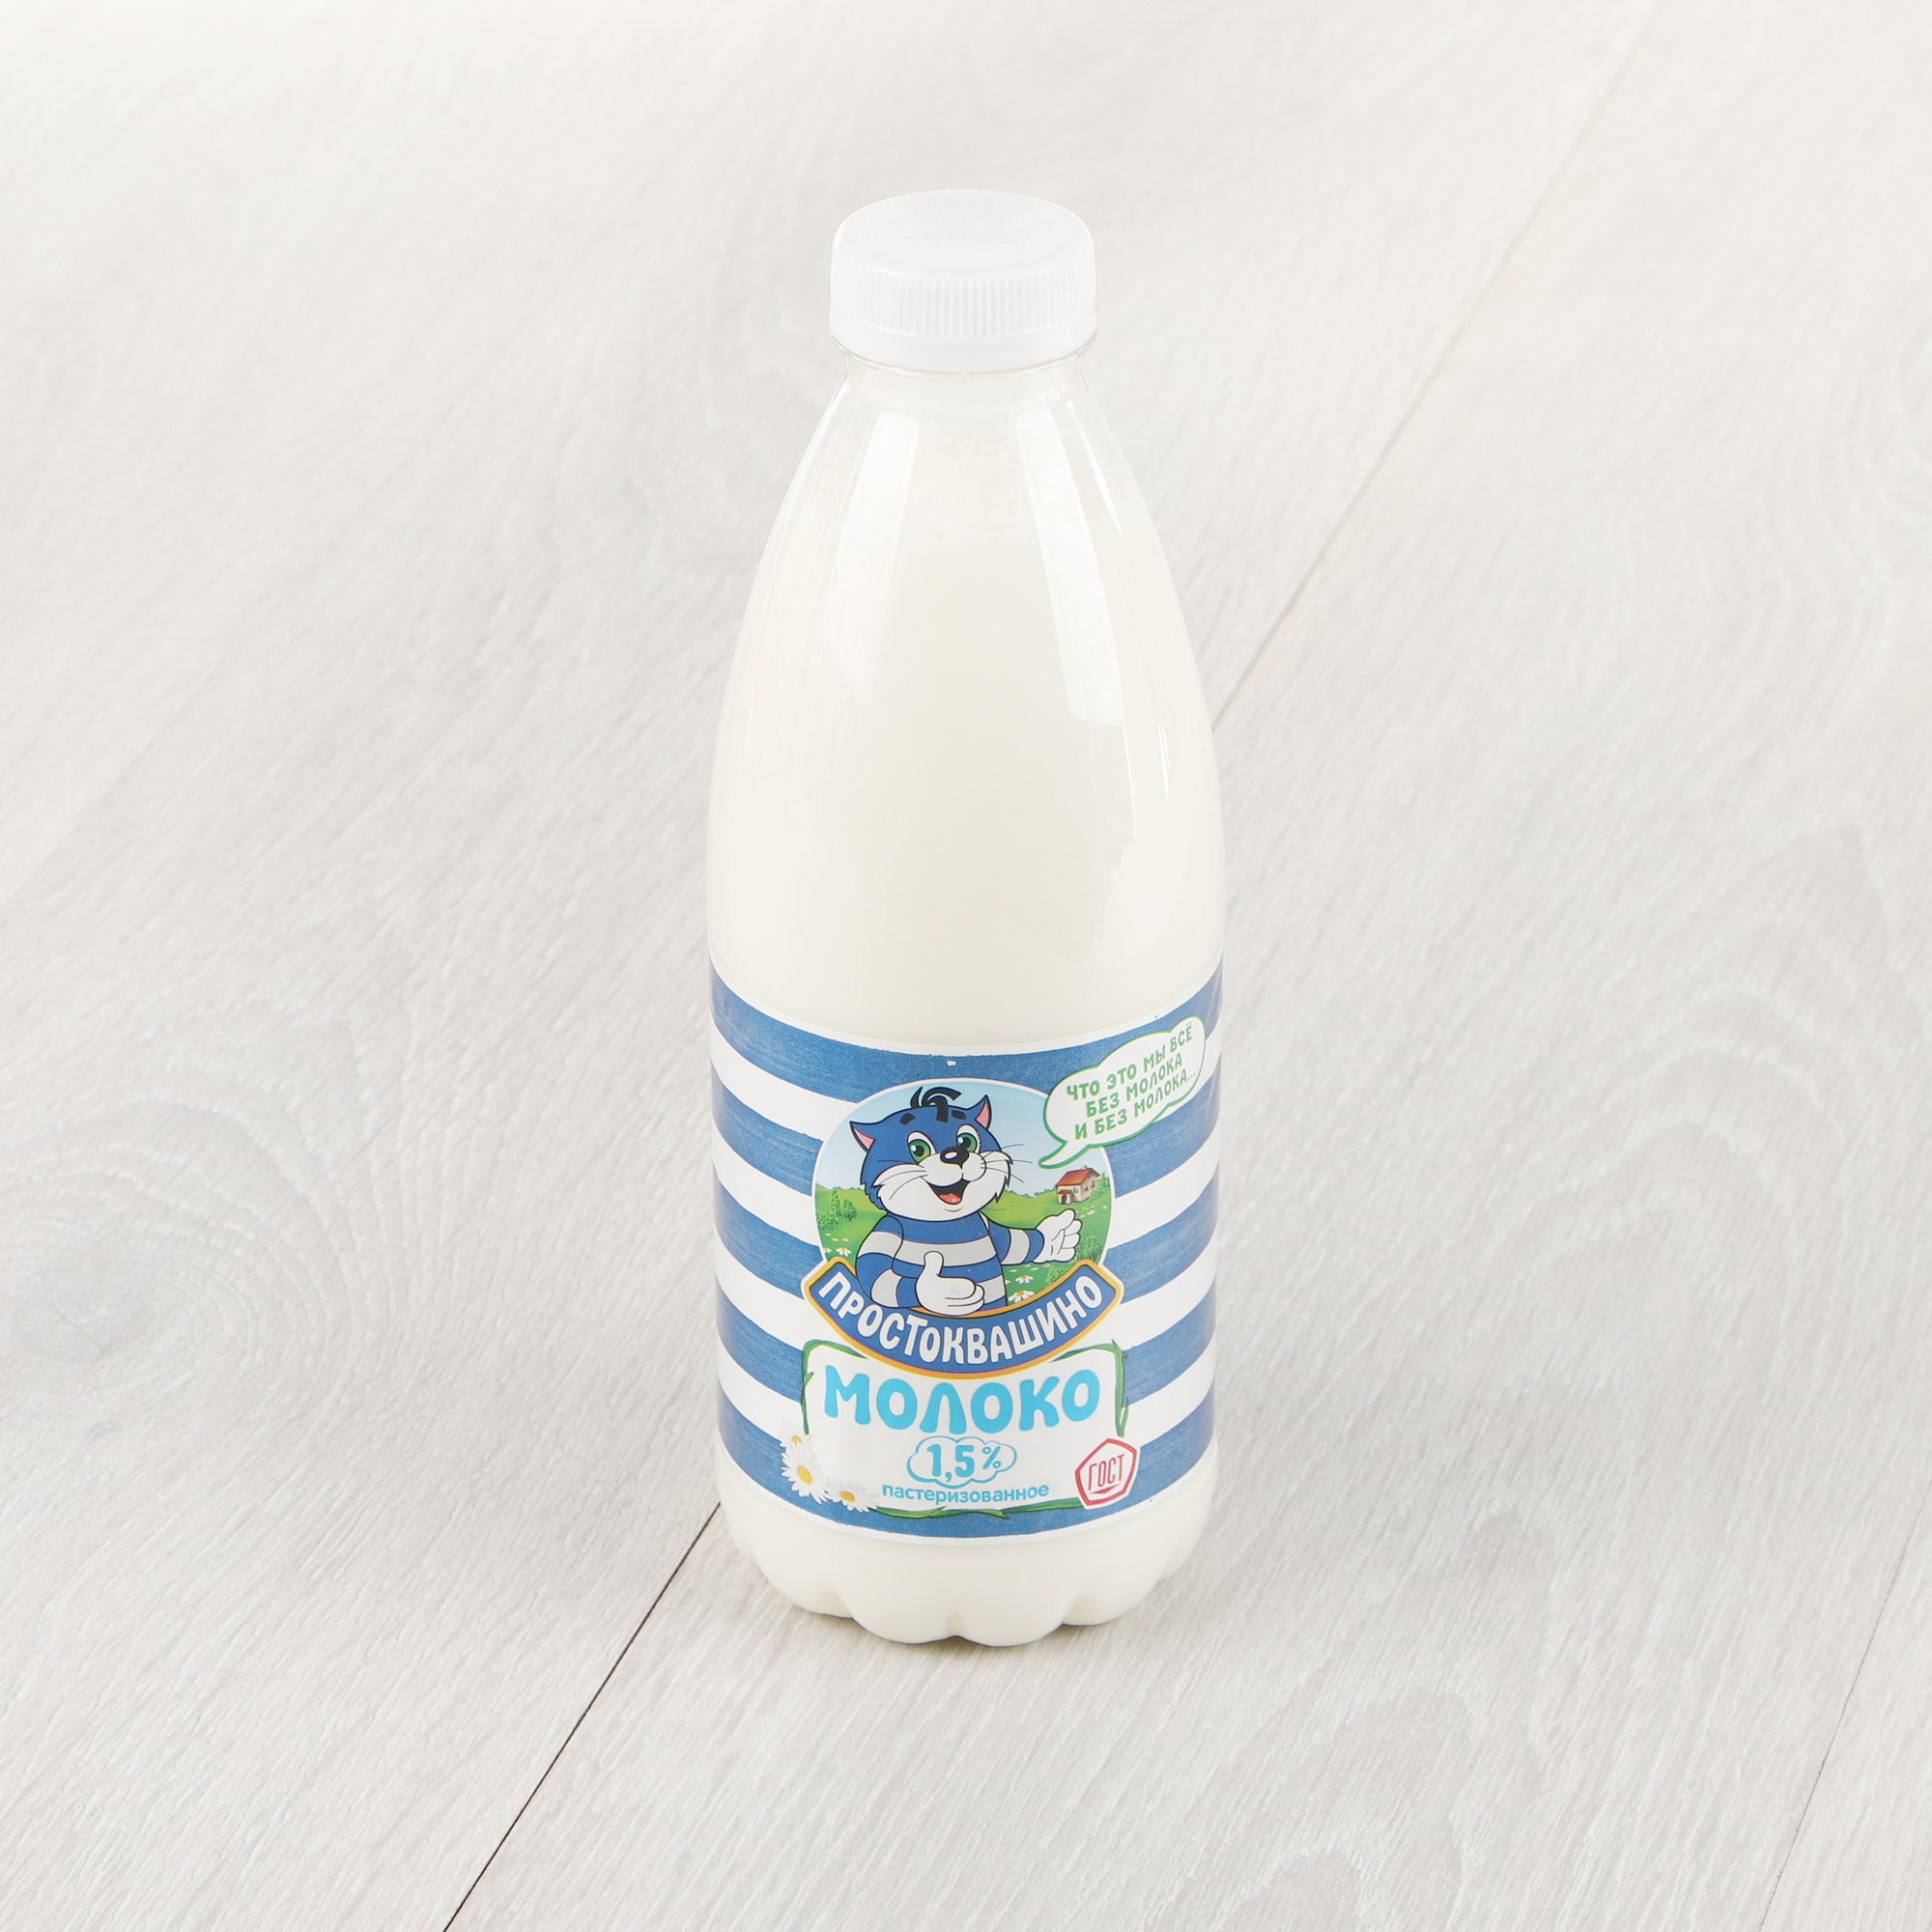 Молоко Простоквашино пастеризованное 1,5% 930 г - фото 1